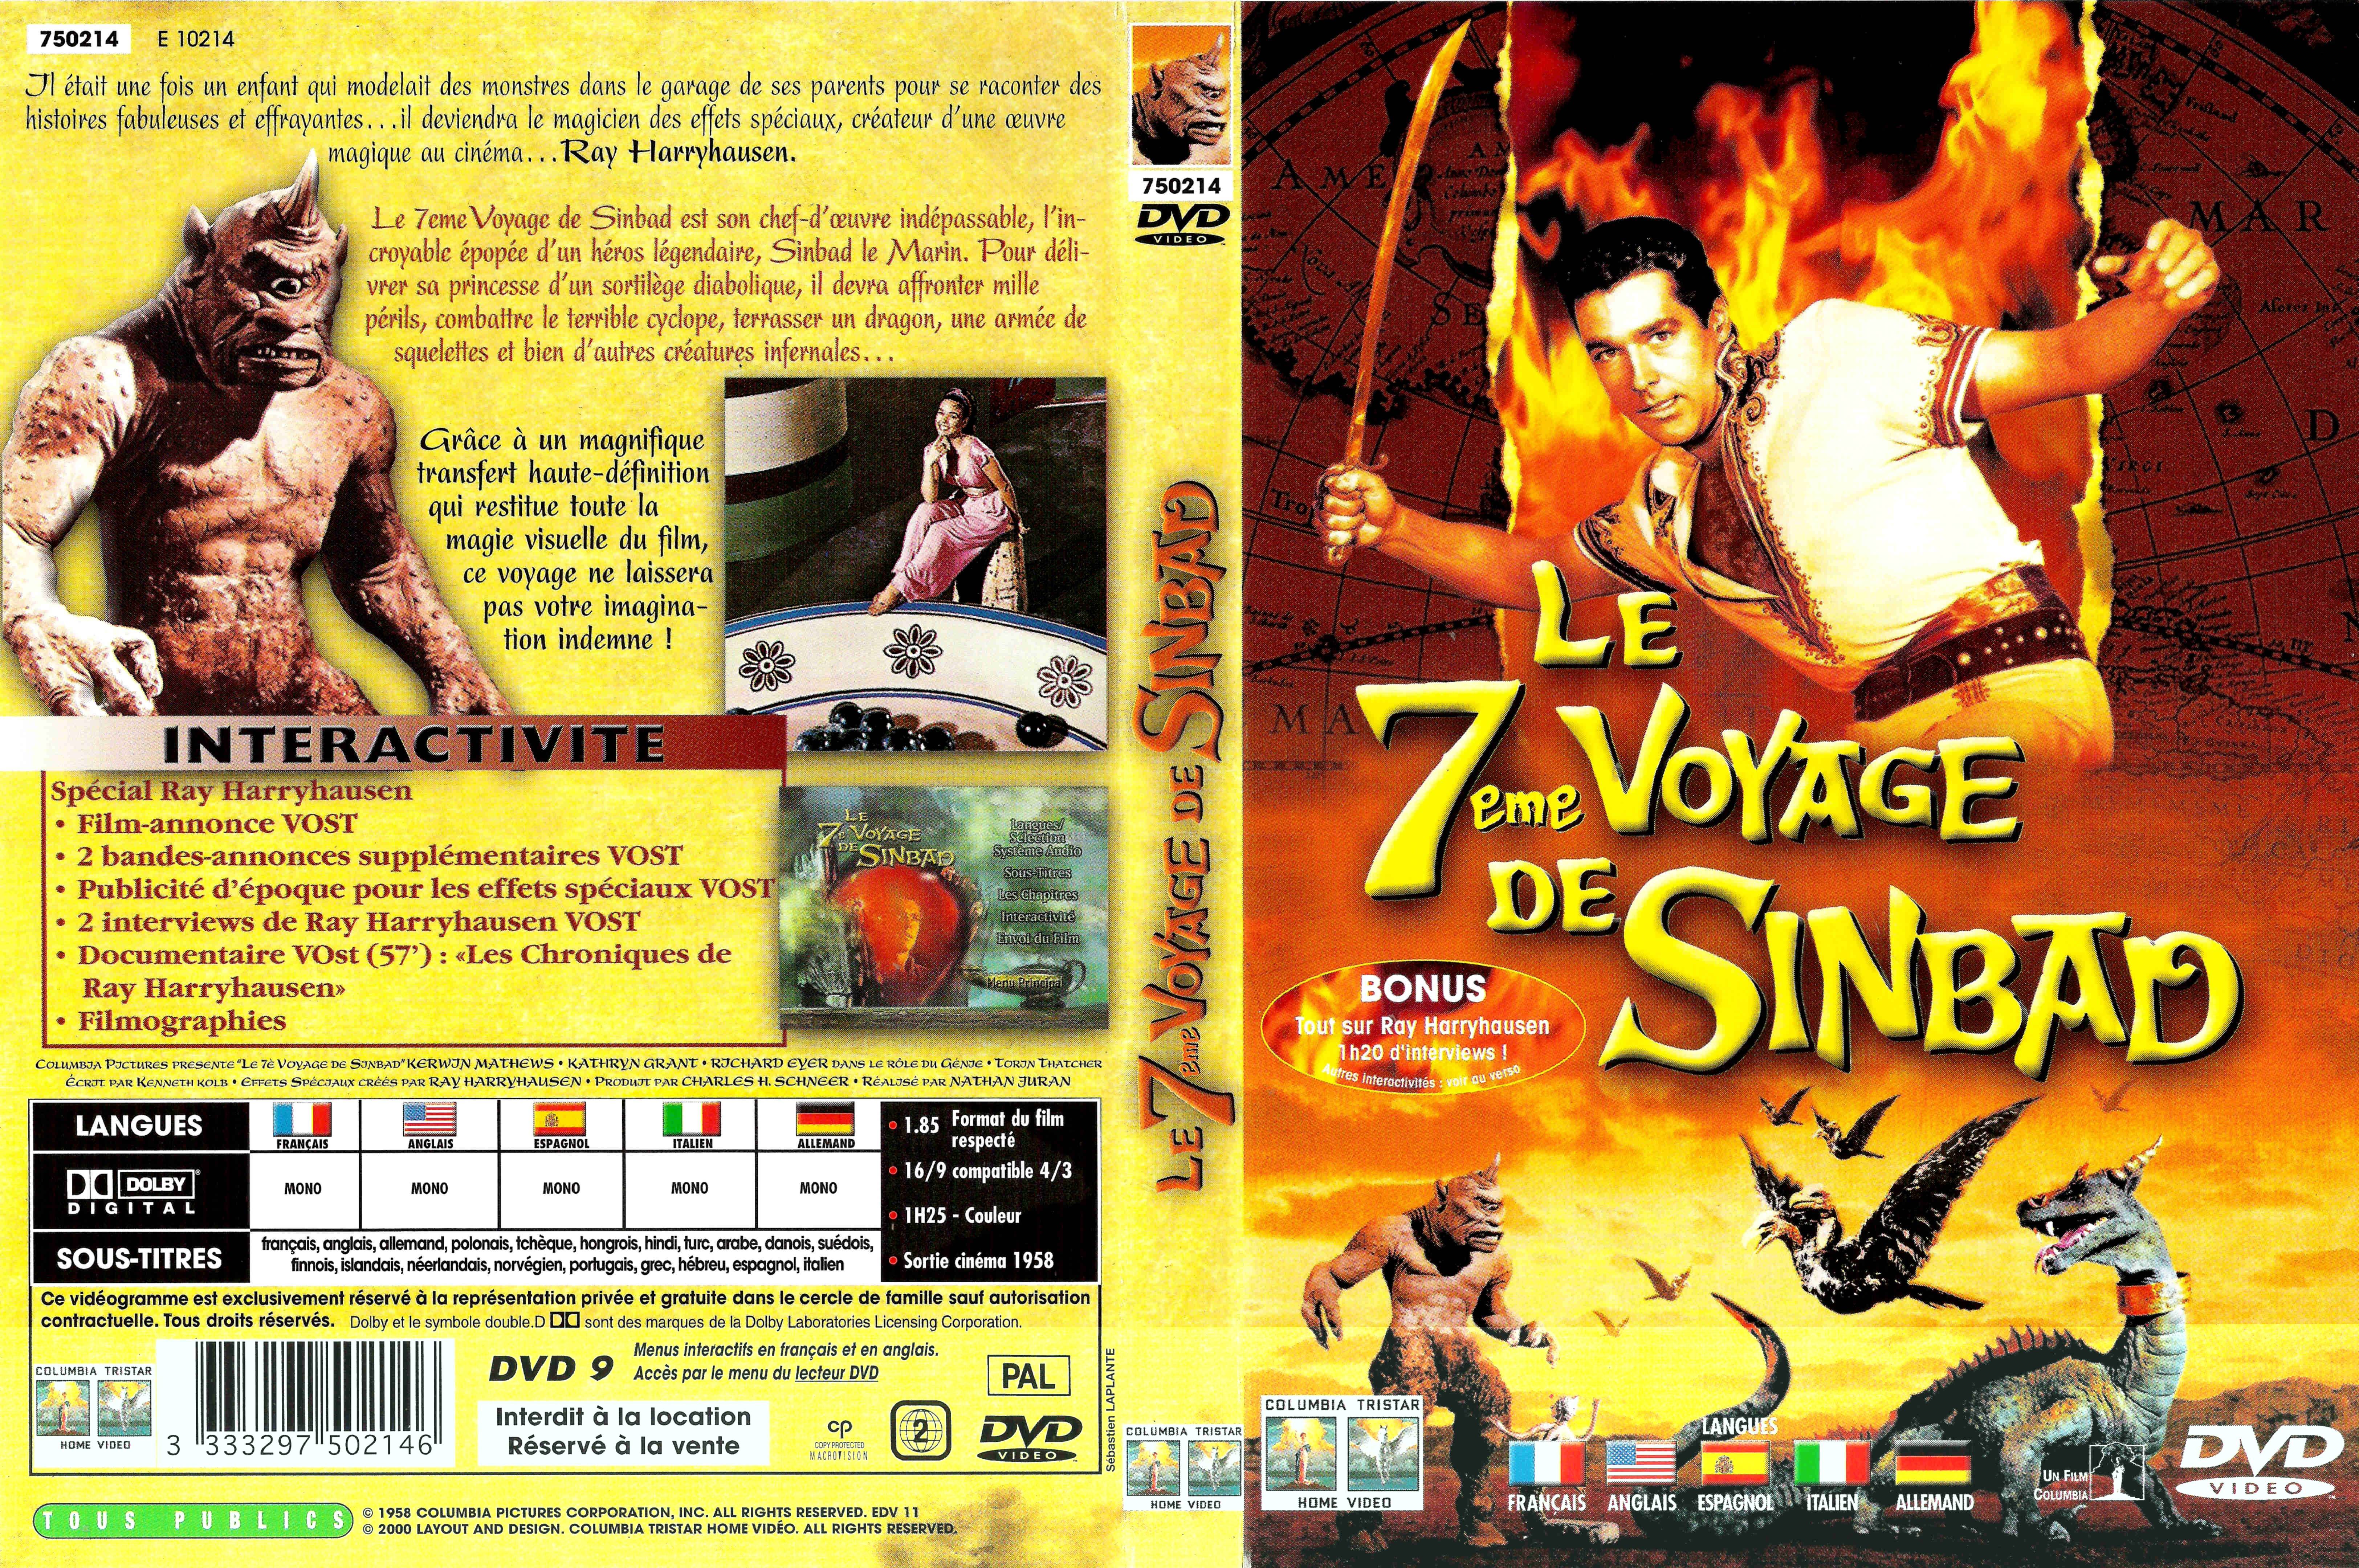 Jaquette DVD Le 7 me voyage de Sinbad